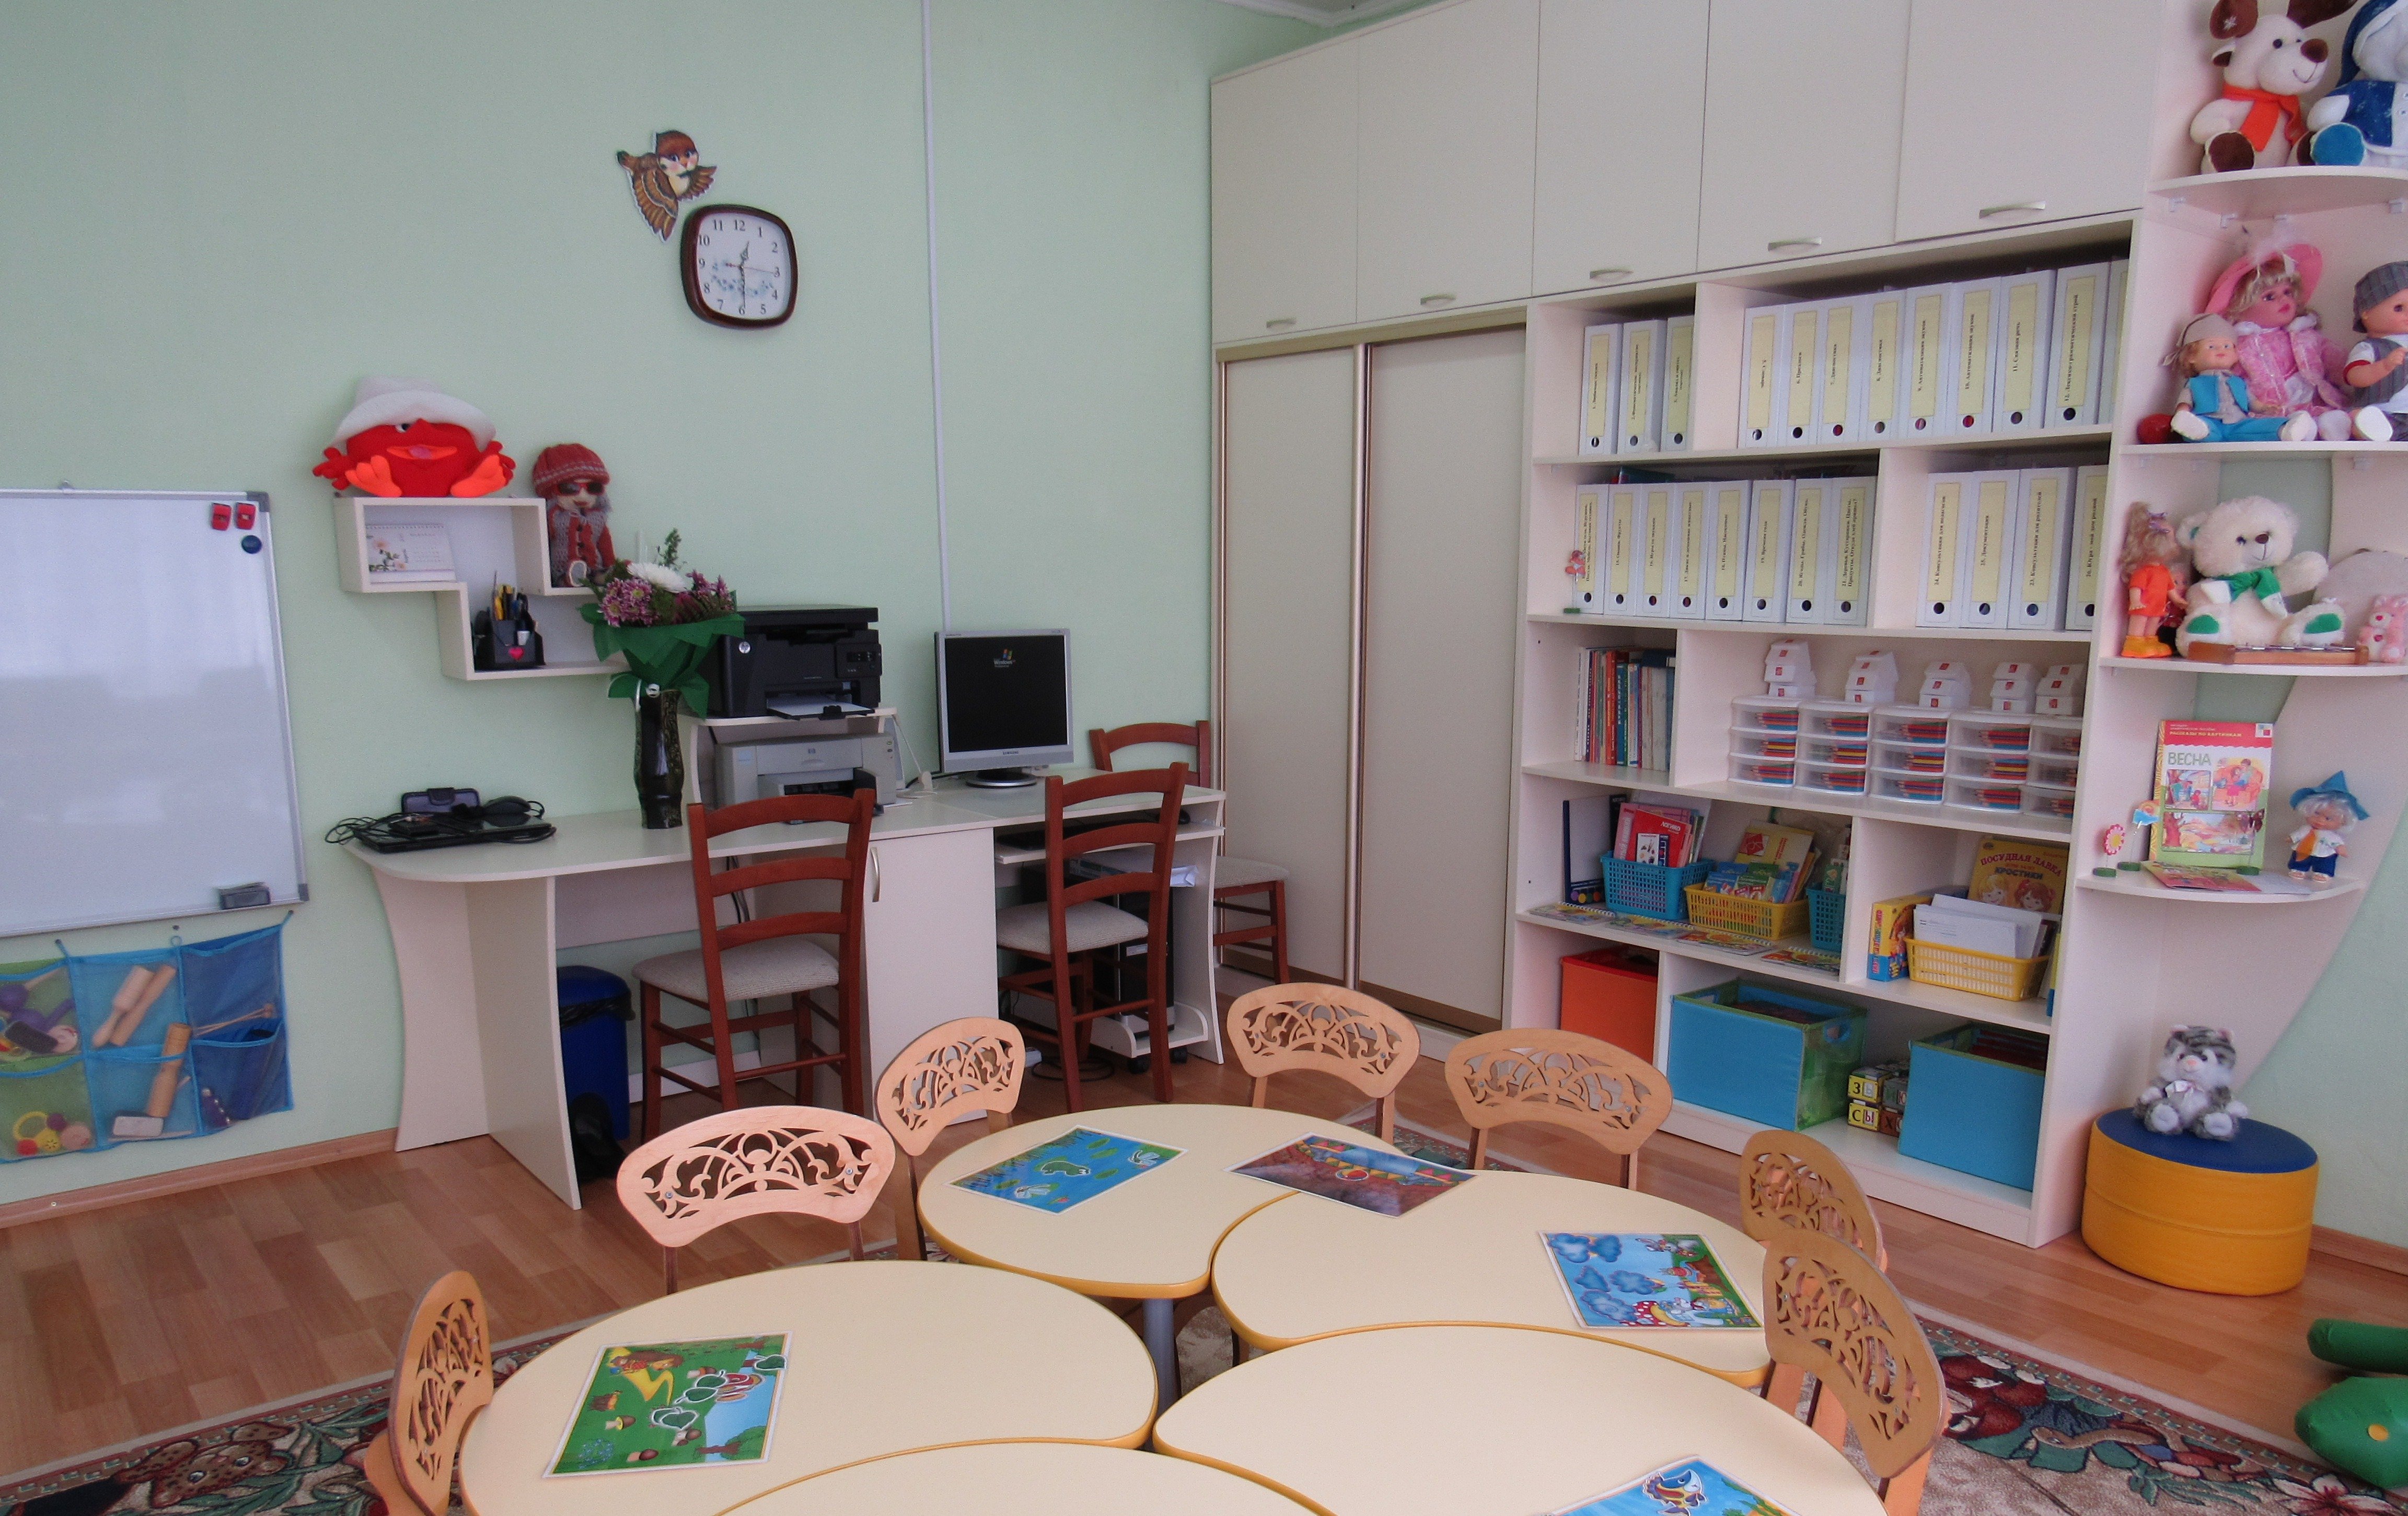 Логопед мебель. Кабинет логопеда. Кабинет логопеда в детском саду. Оборудование для логопедического кабинета. Мебель для логопедического кабинета в детском саду.